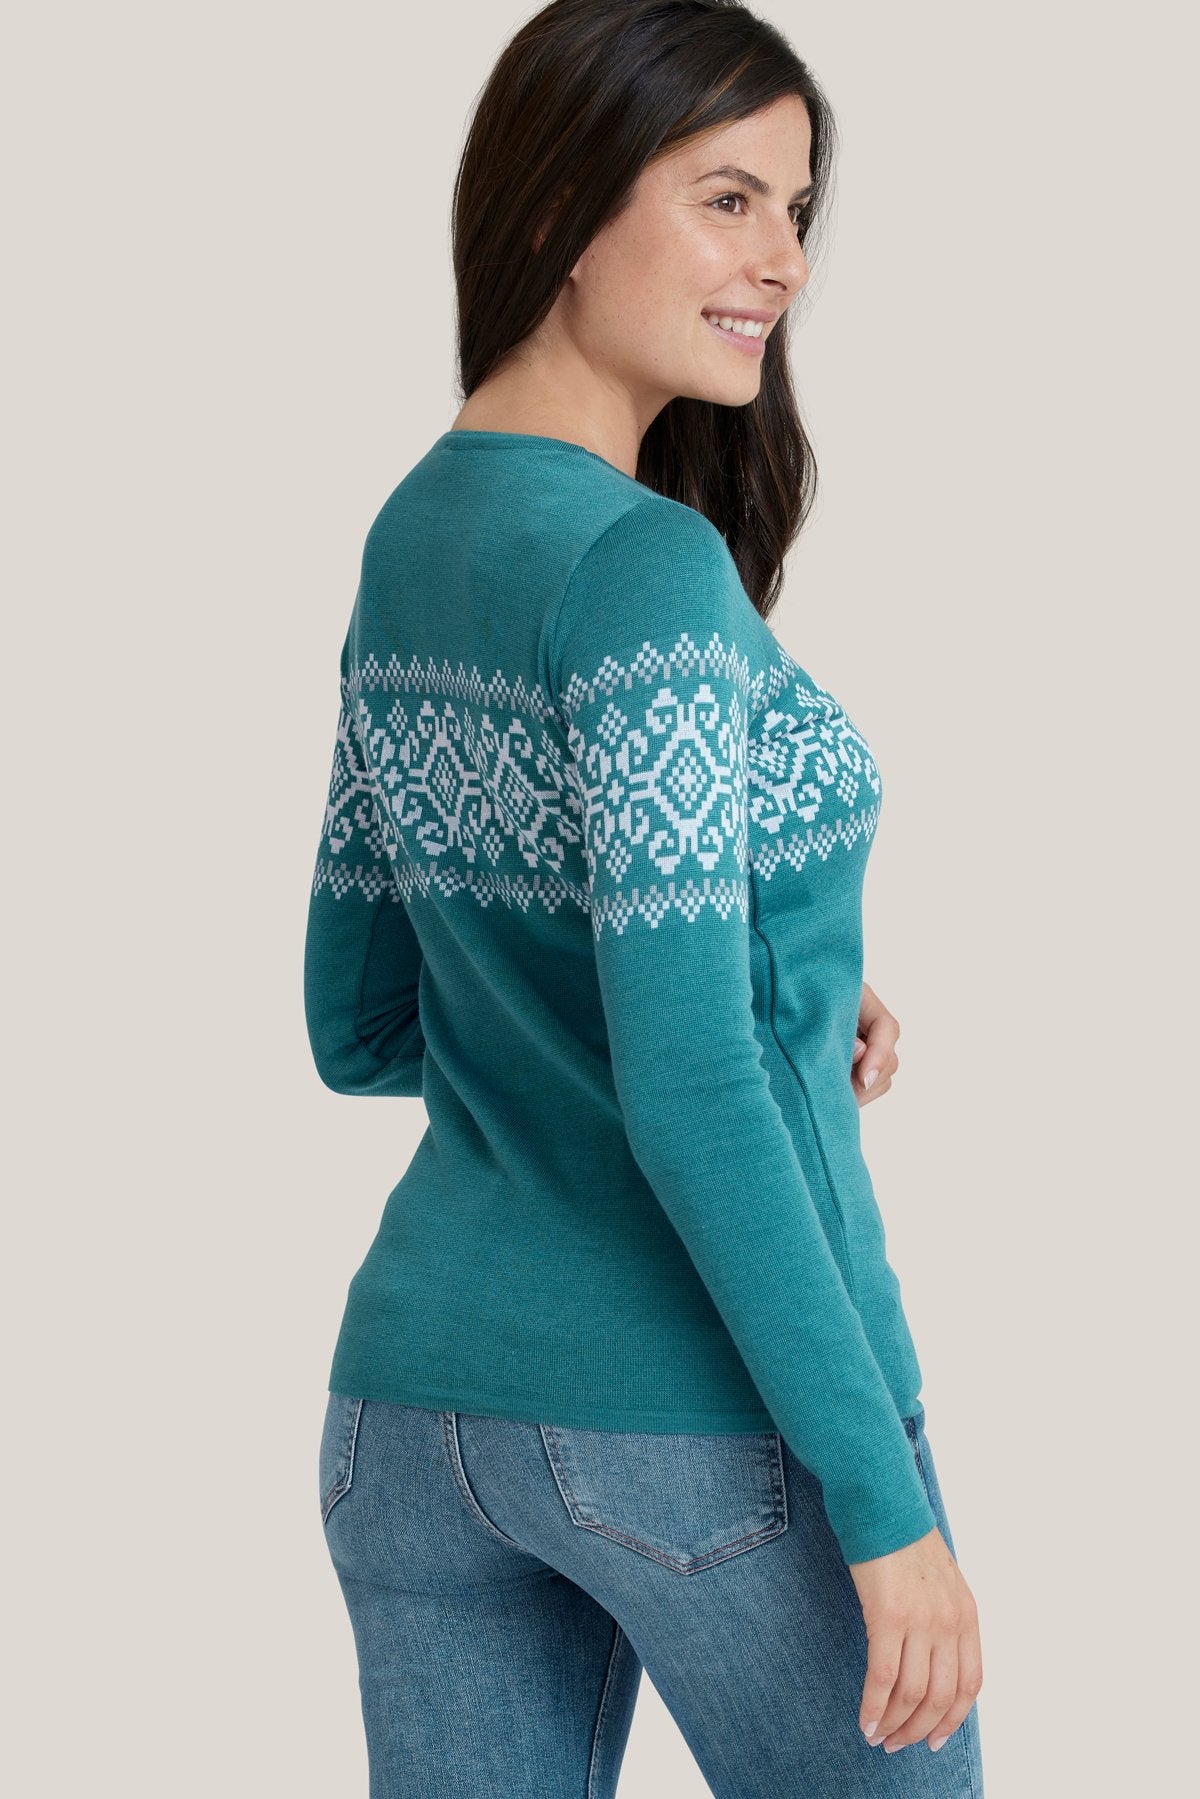 Freya SweaterSweaterXS